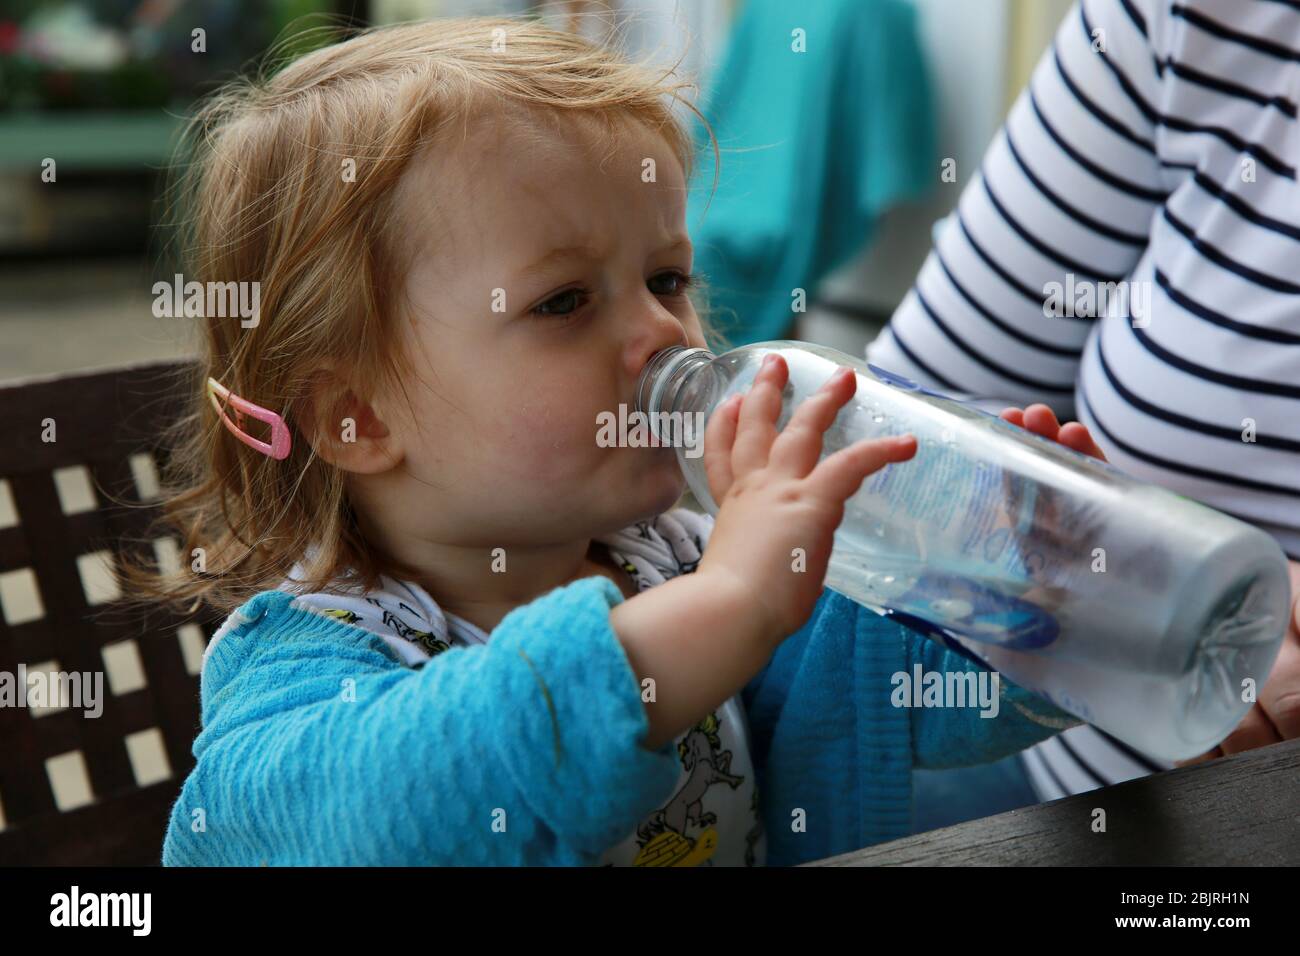 Une jeune fille buvant de l'eau d'une bouteille d'eau Banque D'Images